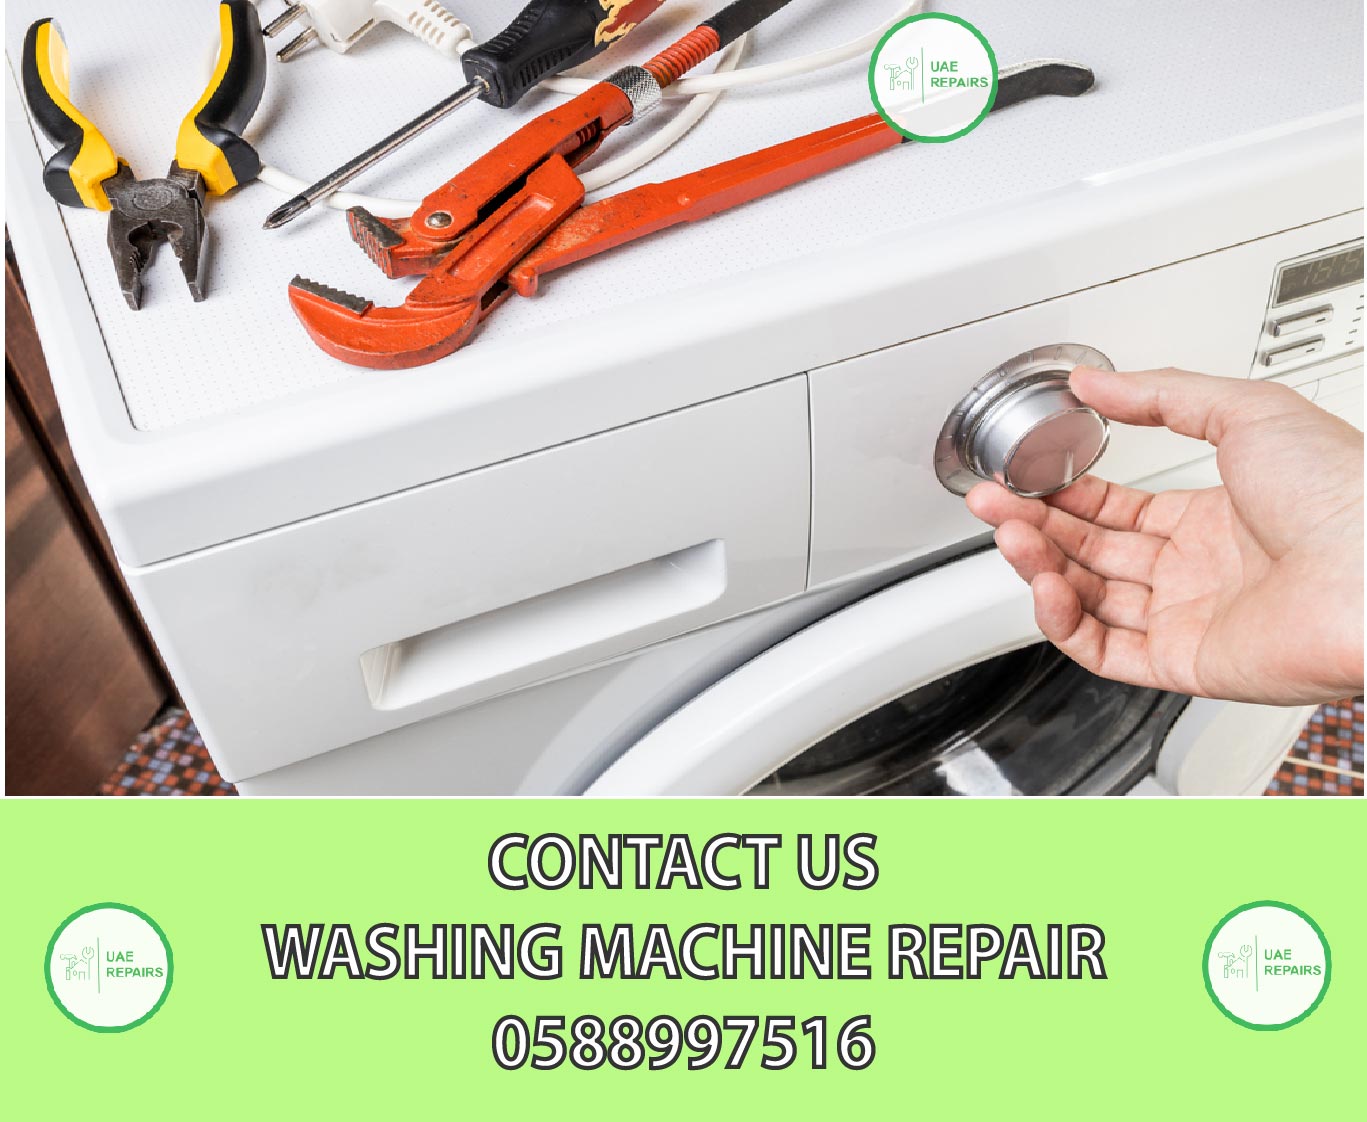 CONTACT US WASHING MACHINE REPAIR UAE 0588997516